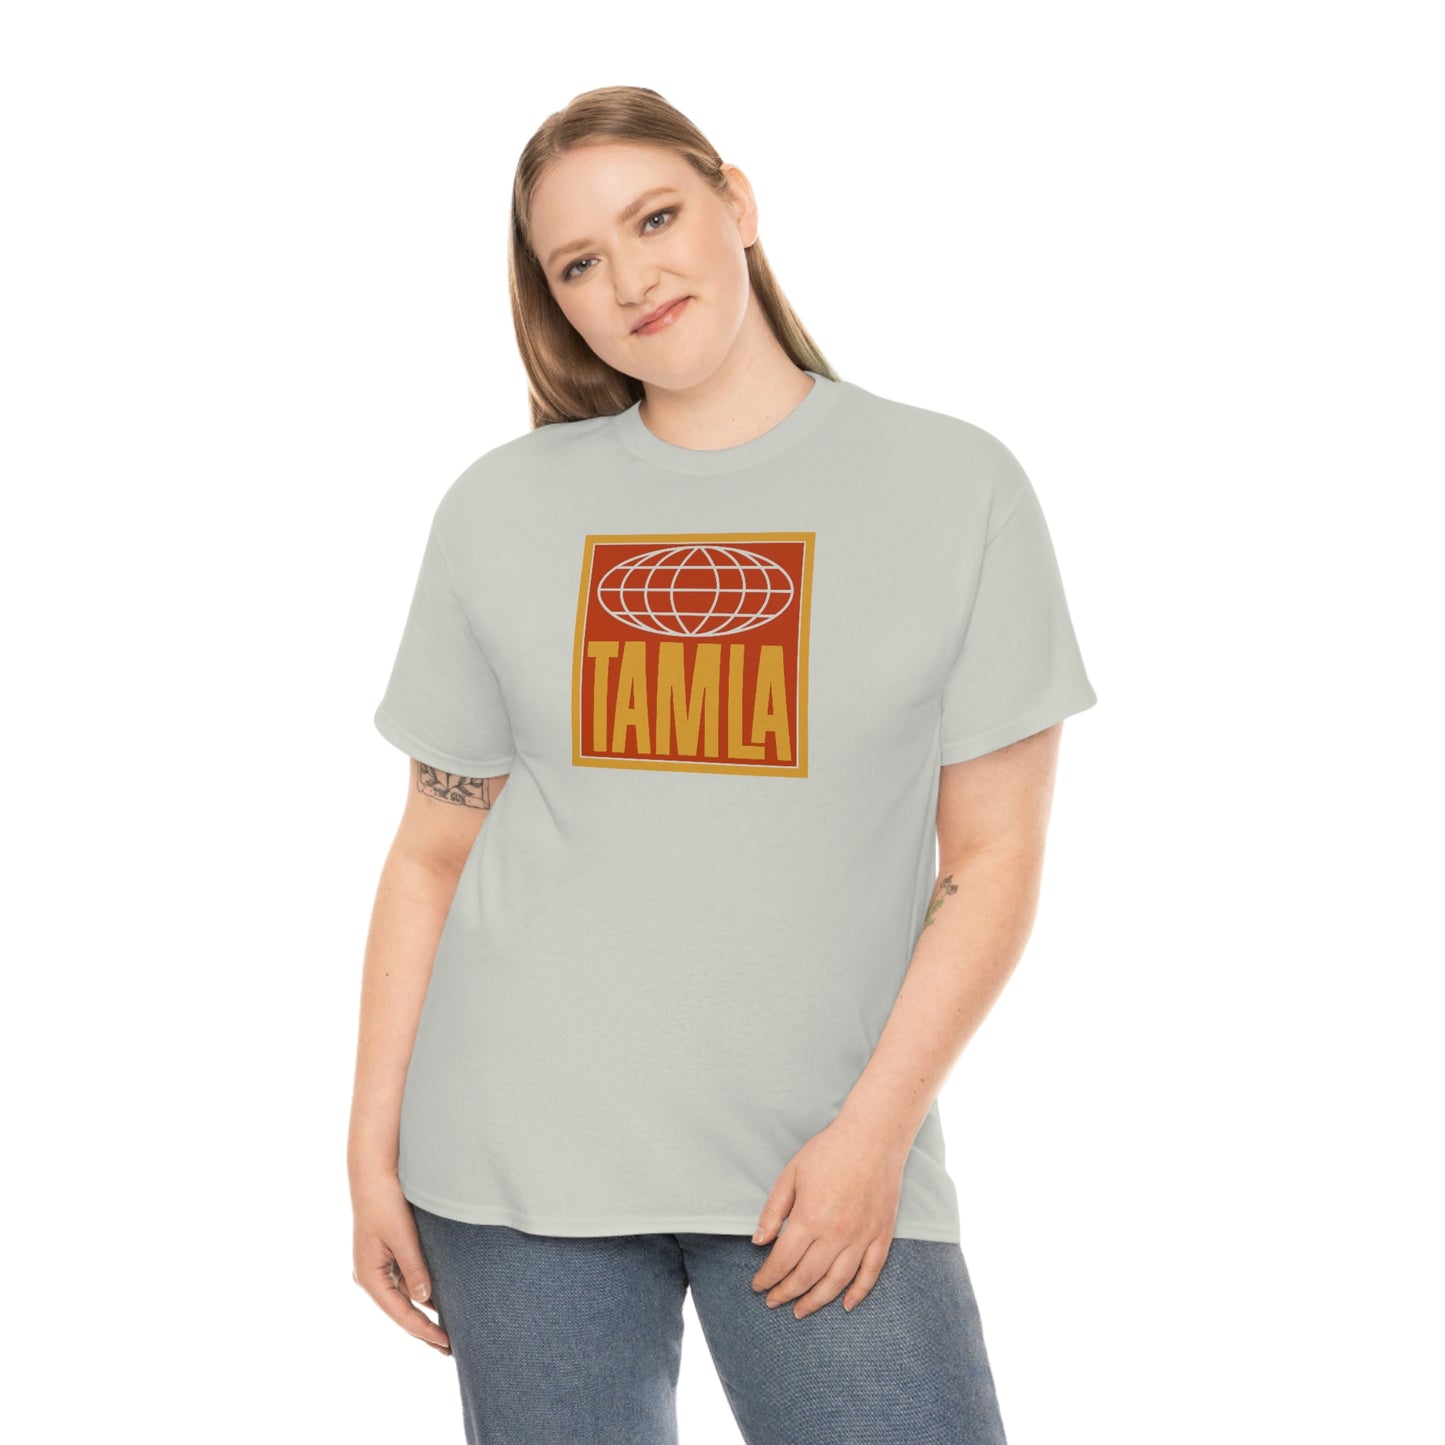 Tamla Records T-Shirt